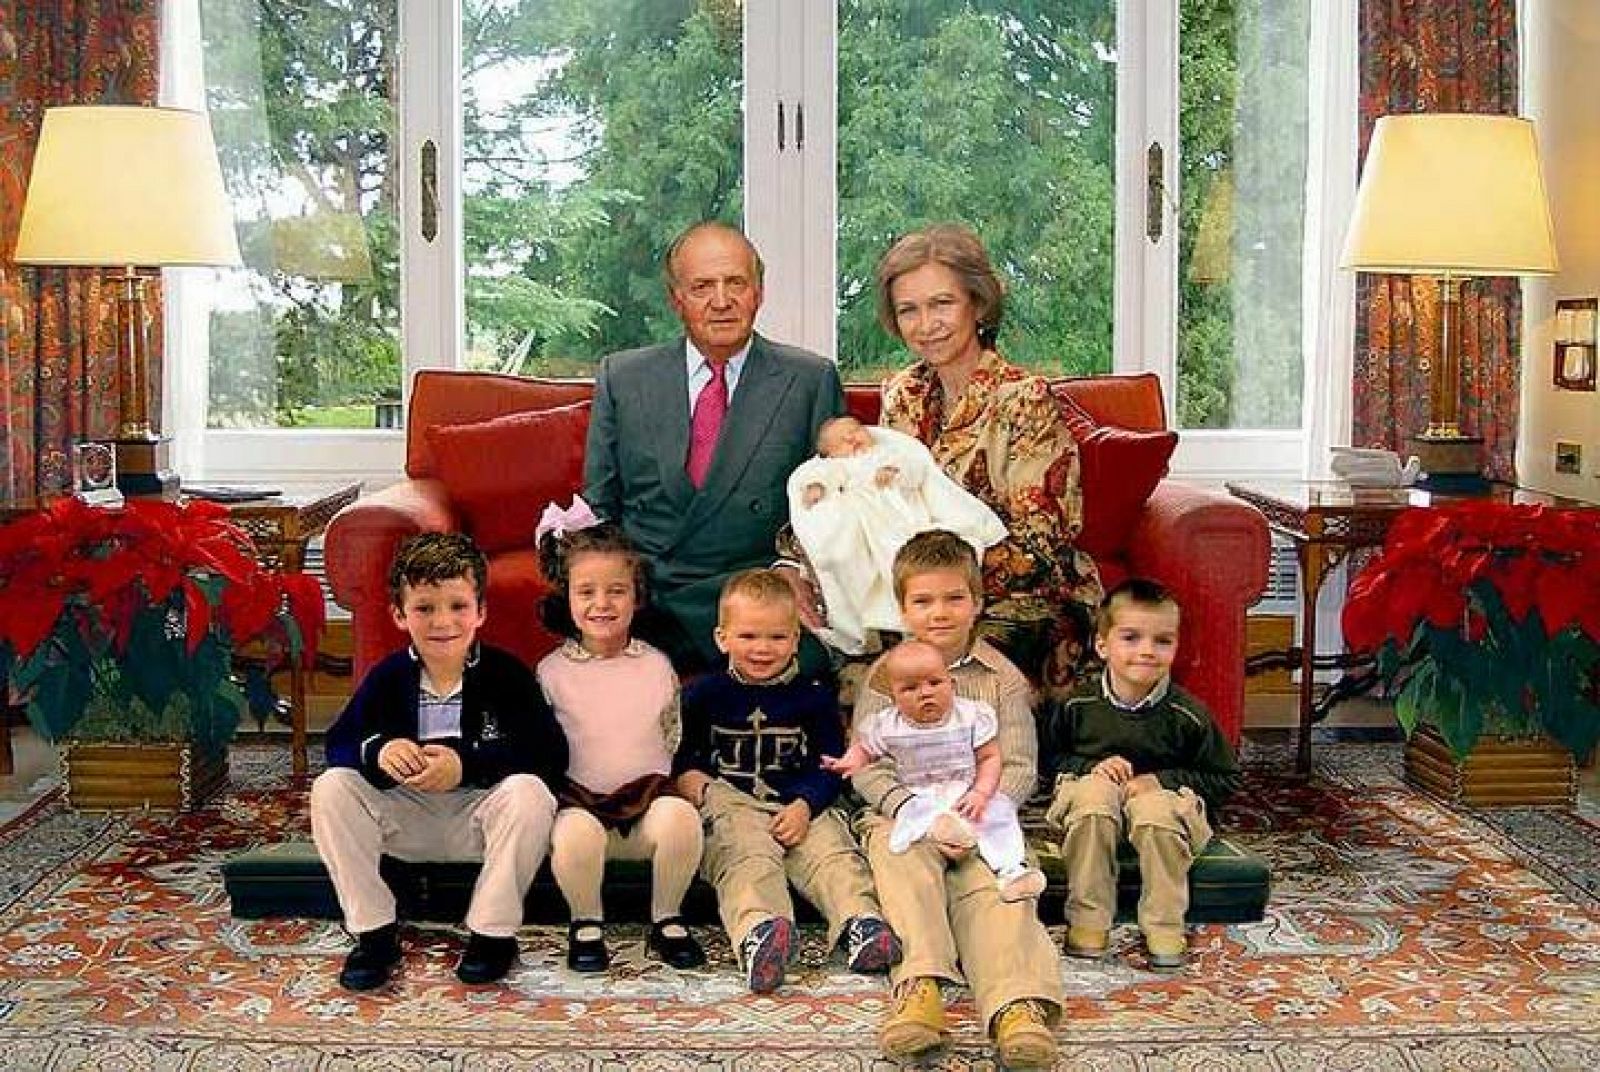 La Reina Doña Sofia ha revelado que ella fue la autora del fotomontaje de la felicitación navideña de la Casa Real en 2005.